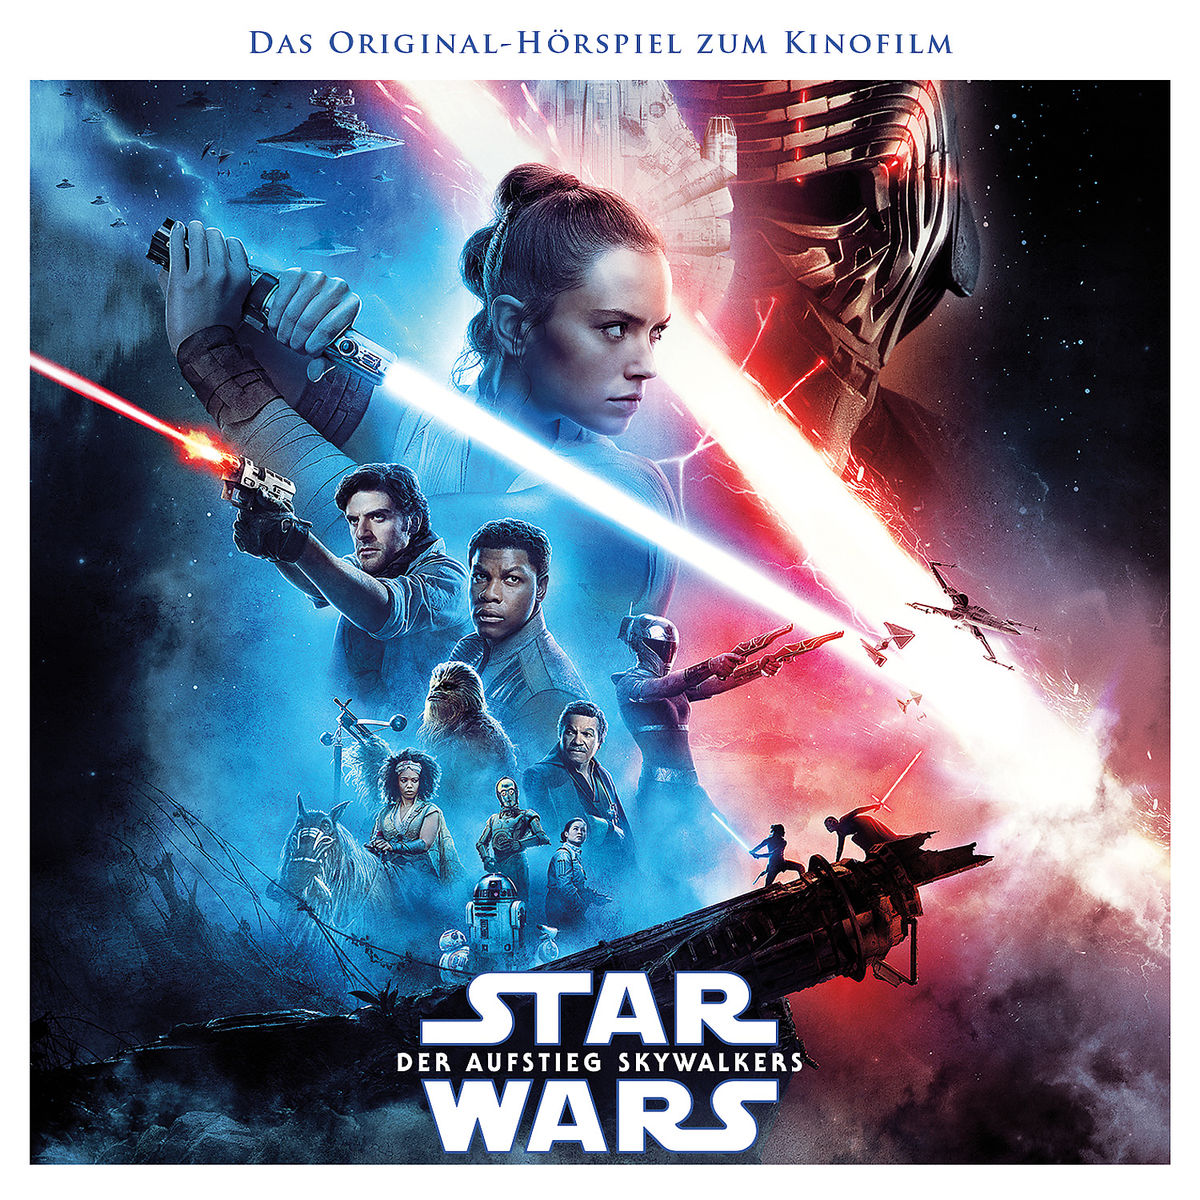 Star Wars: Der Aufstieg Skywalkers 🎧🚀 Das Original-Hörspiel zum Kinofilm erschien bereits vor vier Jahren! Es ist also an der Zeit, mal wieder ein Ohr zu riskieren. ➡️ linktr.ee/folgenreich ✨ #starwars #skywalker #hörspiel #hörbuch #DerAufstiegSkywalkers #TheRiseOfSkywalker